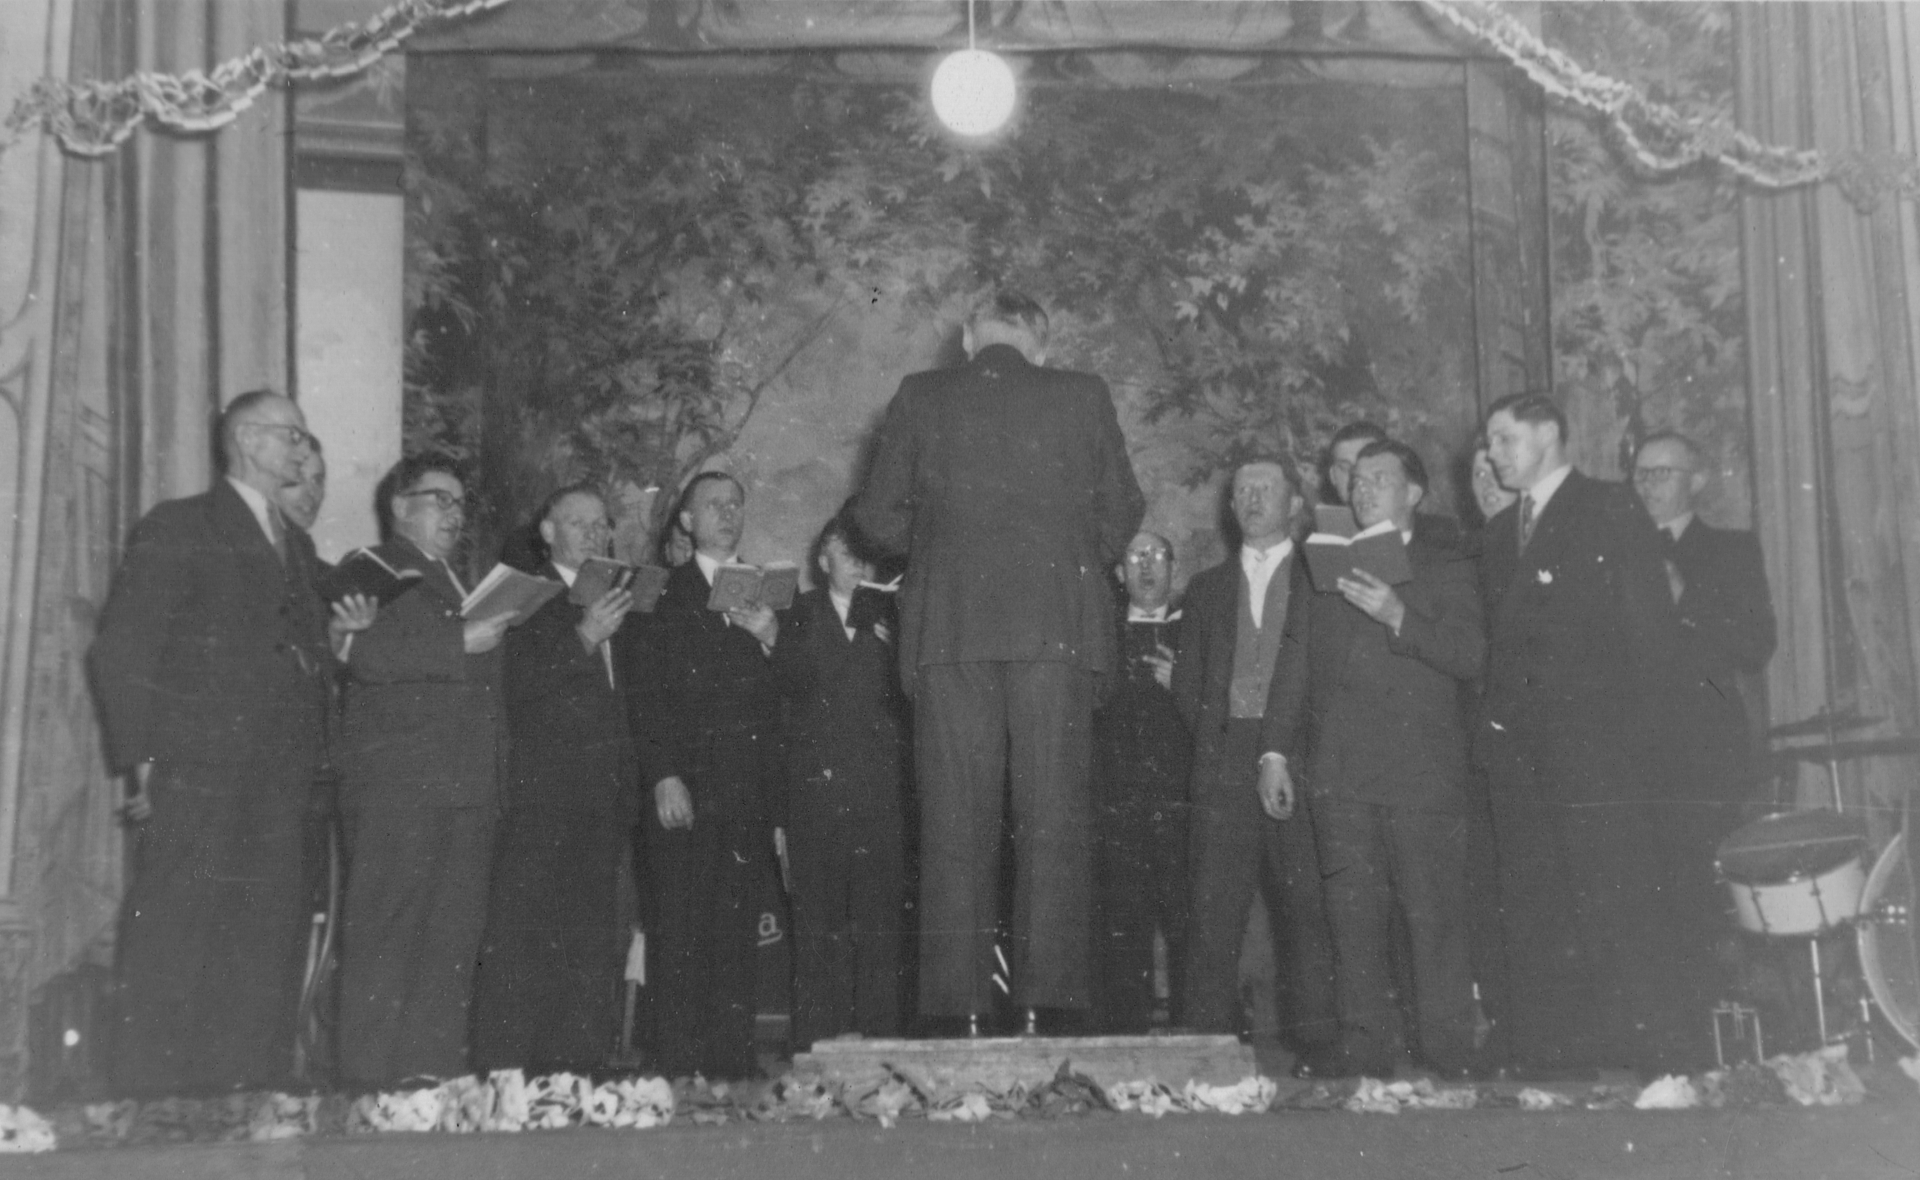 1966 im Schützenhaus Heinrich Köhler leitete viele Jahre den Lüdersdorfer Männerchor